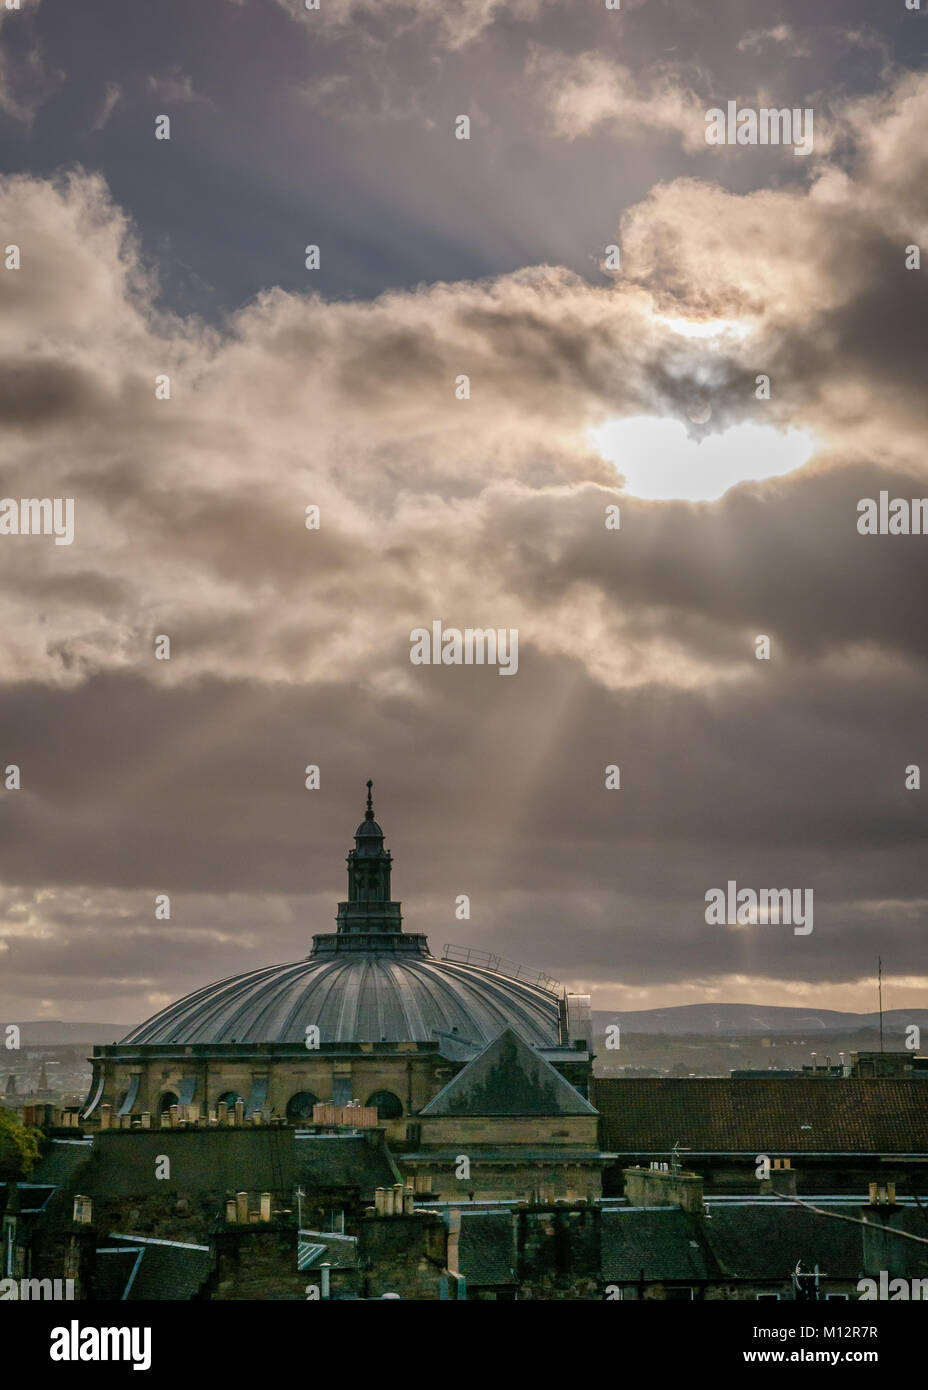 Blick von der Dachterrasse der McEwan Hall, Universität Edinburgh Graduierung Halle mit Moody dunklen Himmel und Licht stream, Edinburgh, Schottland, Großbritannien Stockfoto